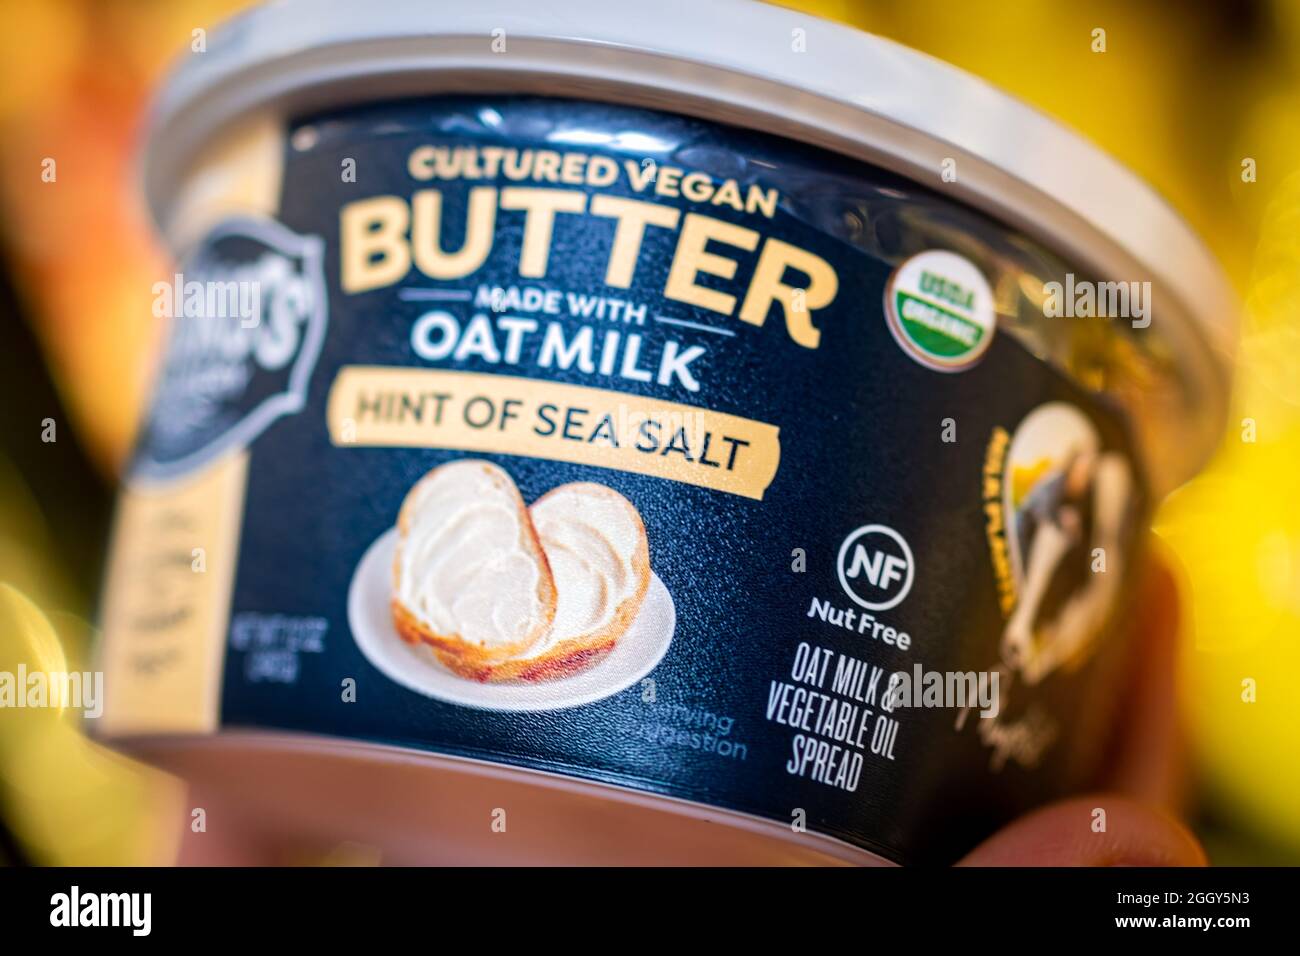 Herndon, USA - 25. März 2021: Nahaufnahme von Hand halten vegane Lebensmittel verpackt Miyoko's Meersalz kultivierte Butter aus Hafermilch, nussfreie Gemüse sp Stockfoto